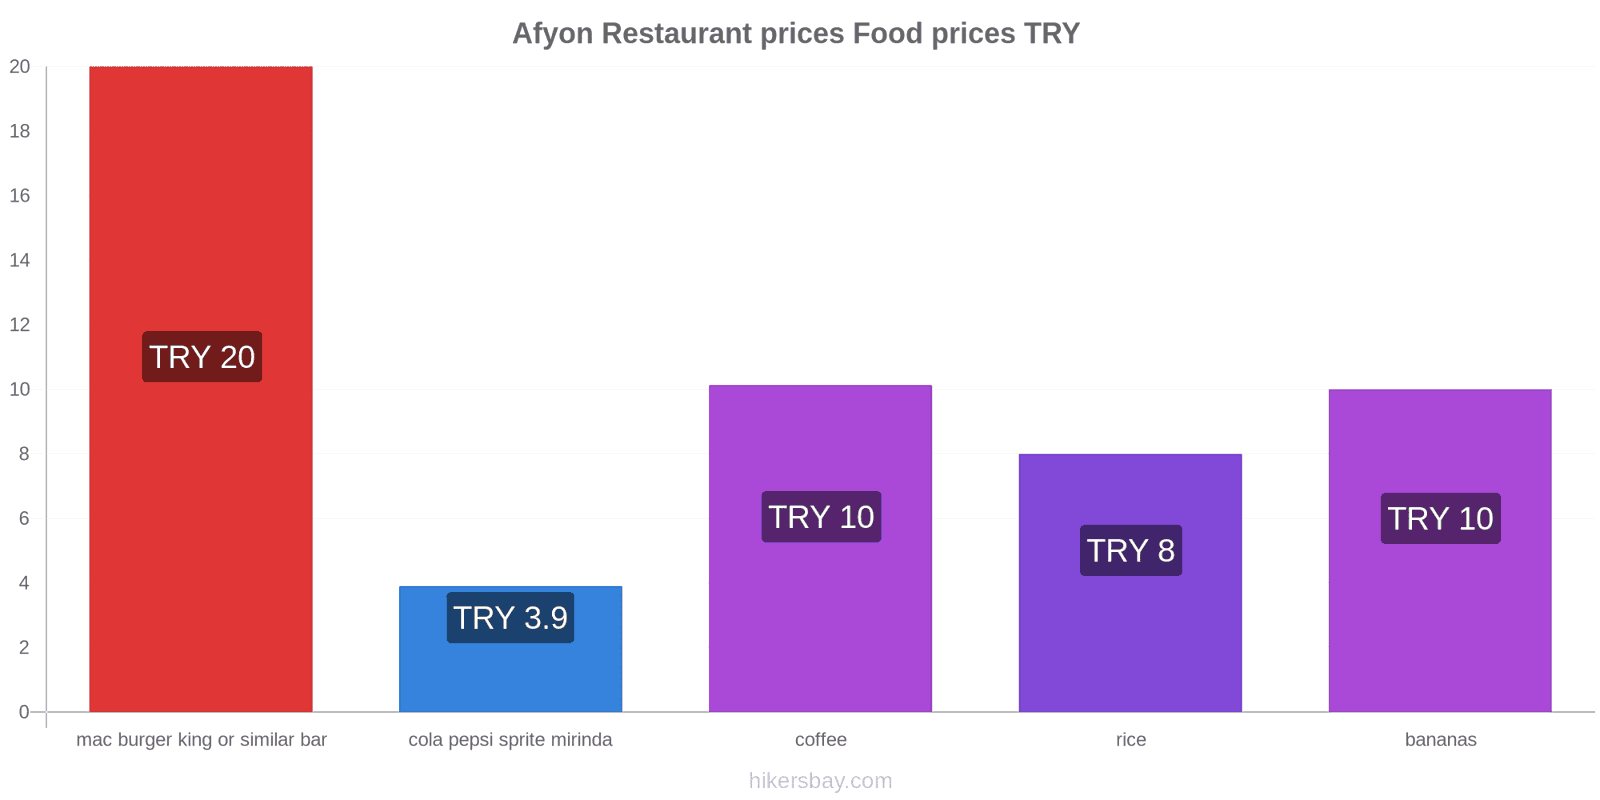 Afyon price changes hikersbay.com